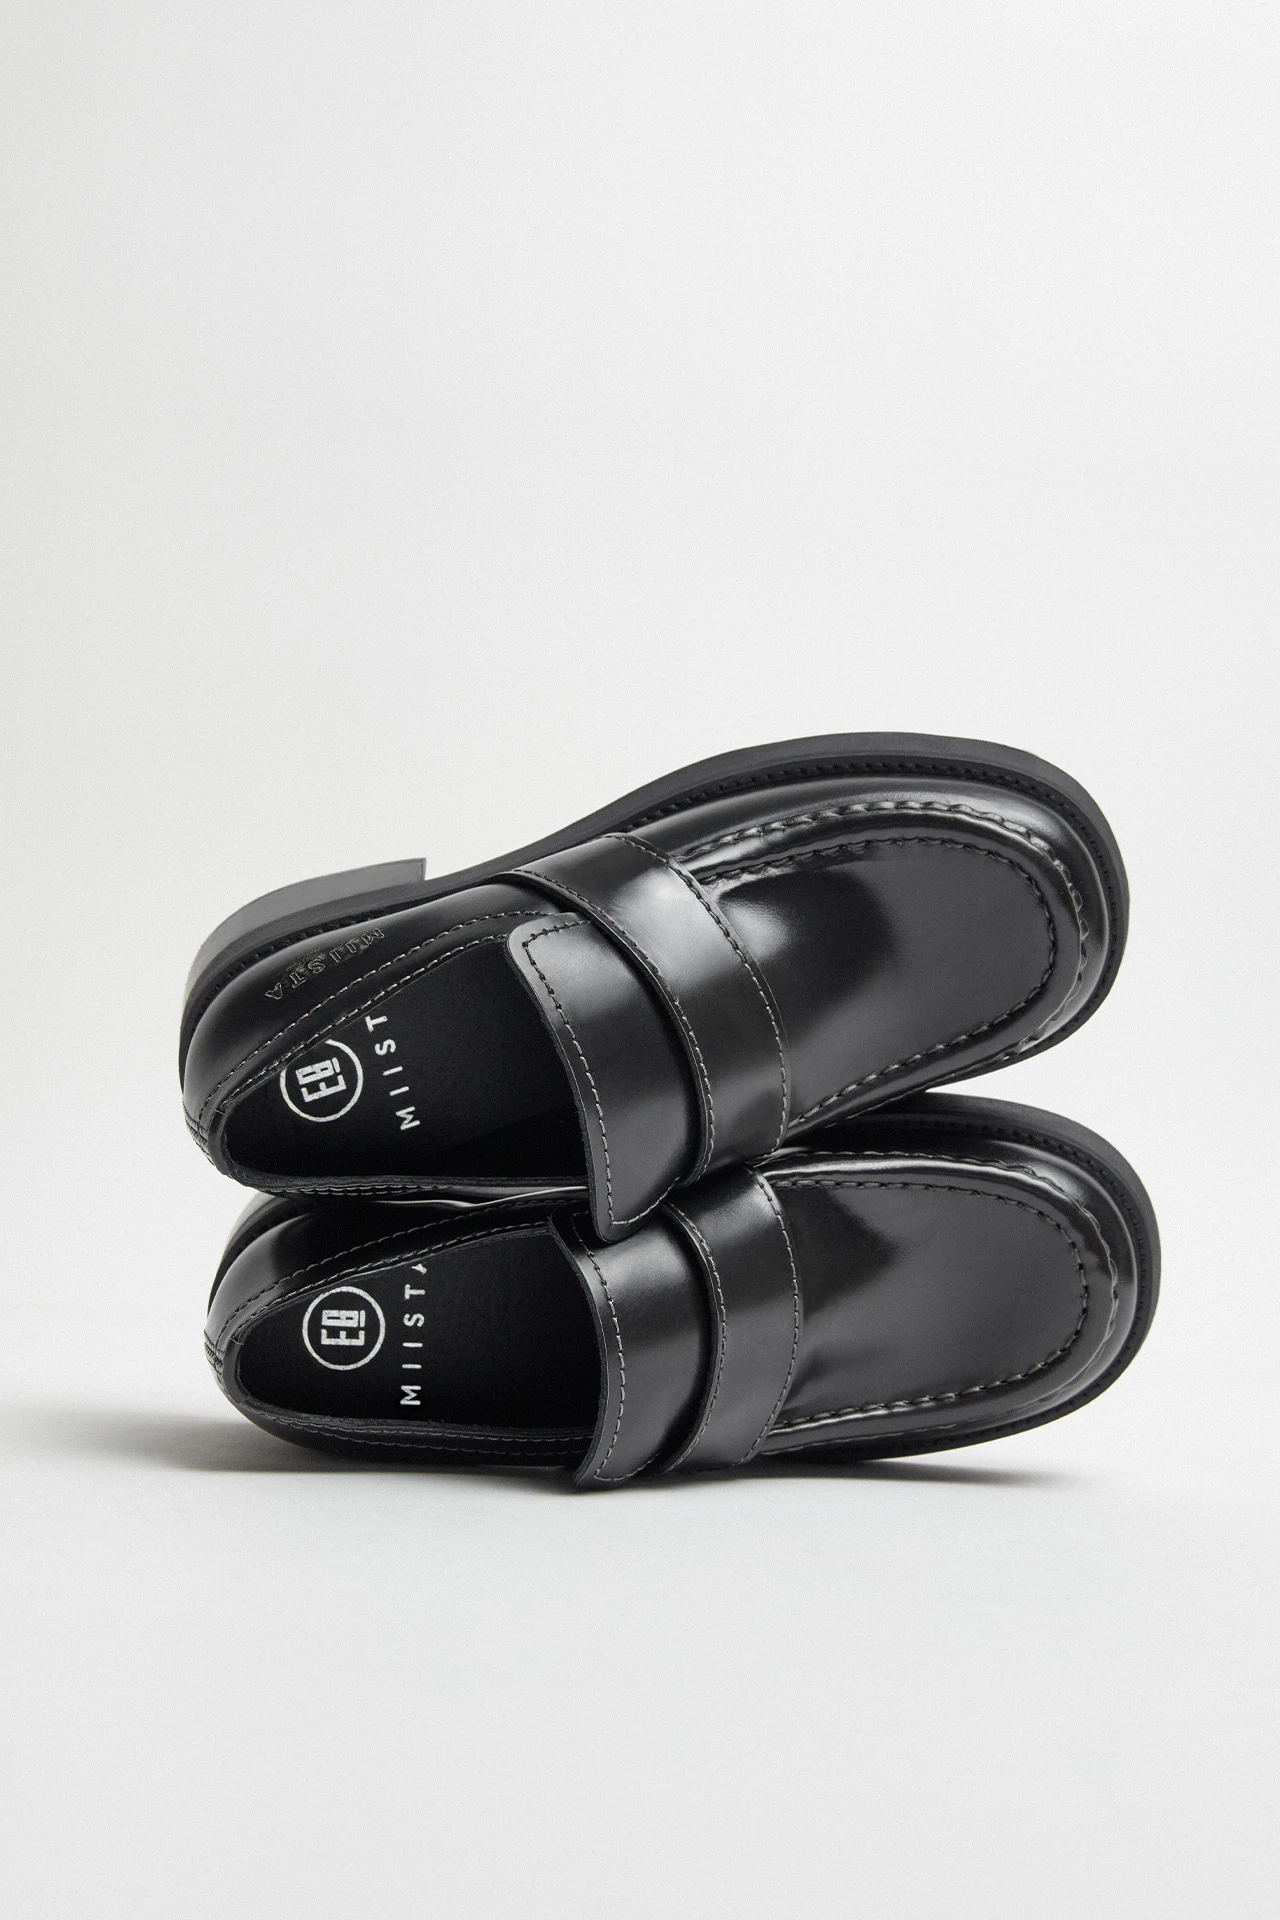 E8-lib-black-loafers-03